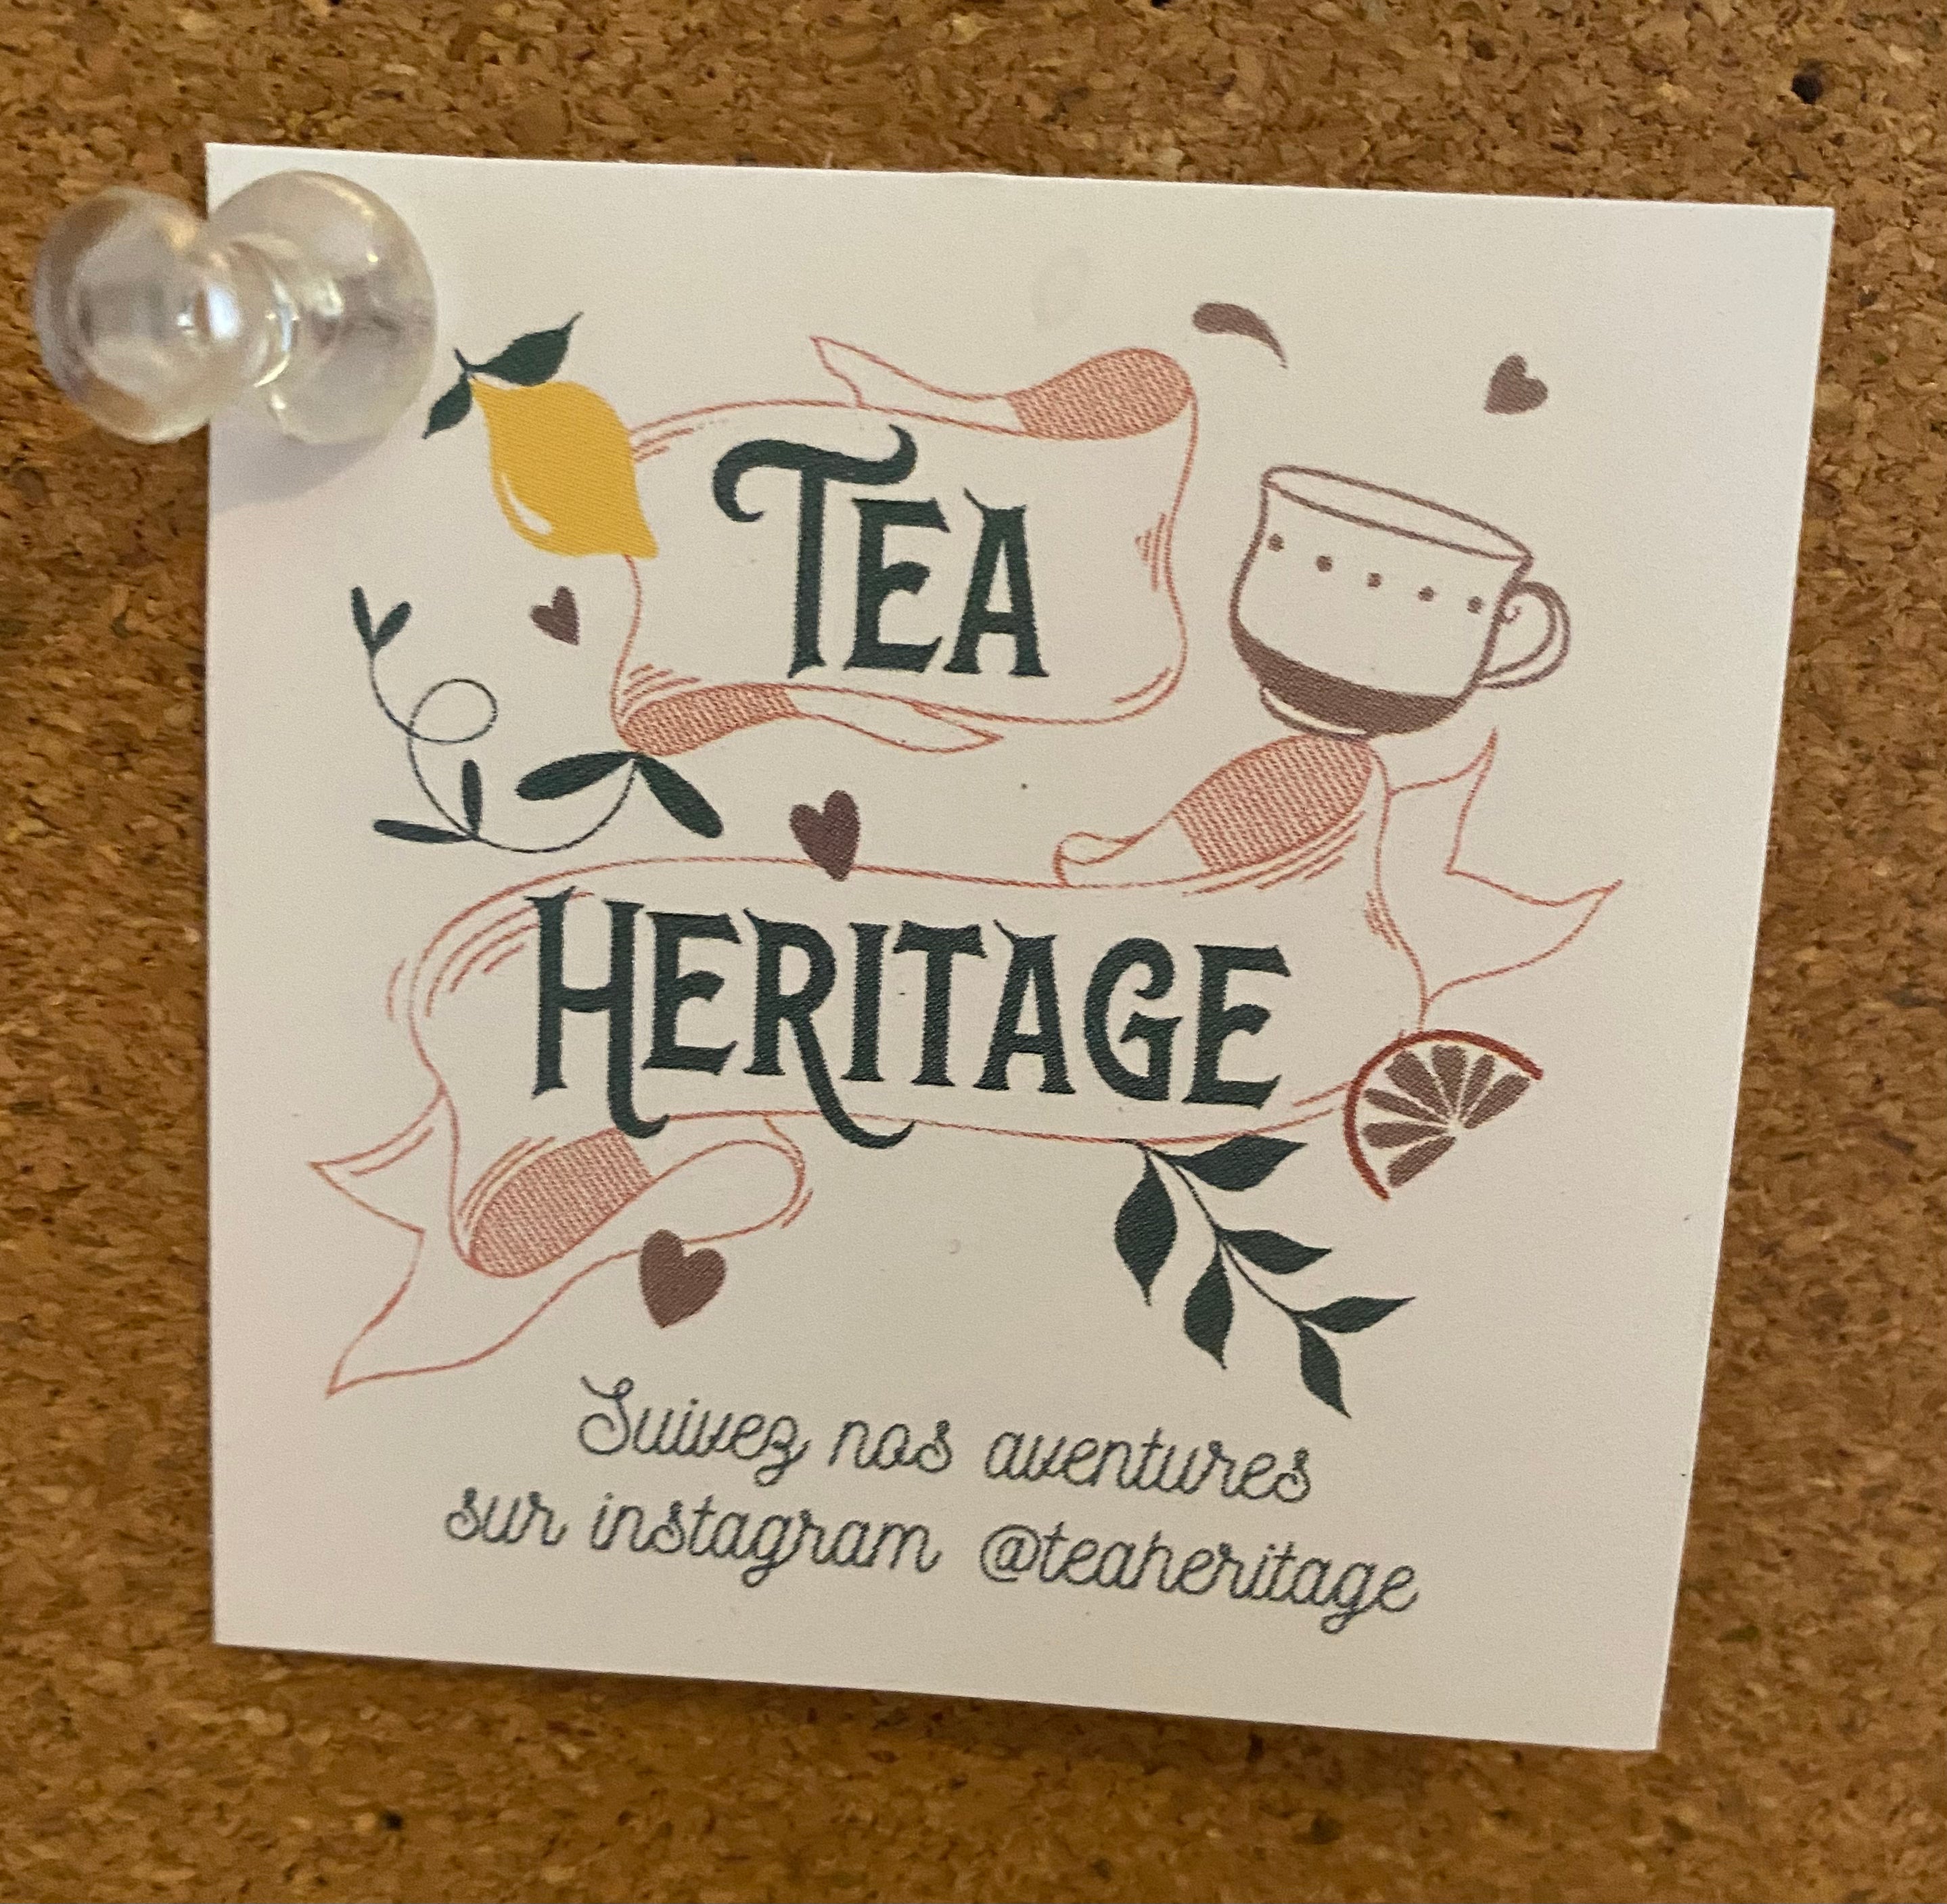 Tea Heritage Rooibos Blood Orange Tea